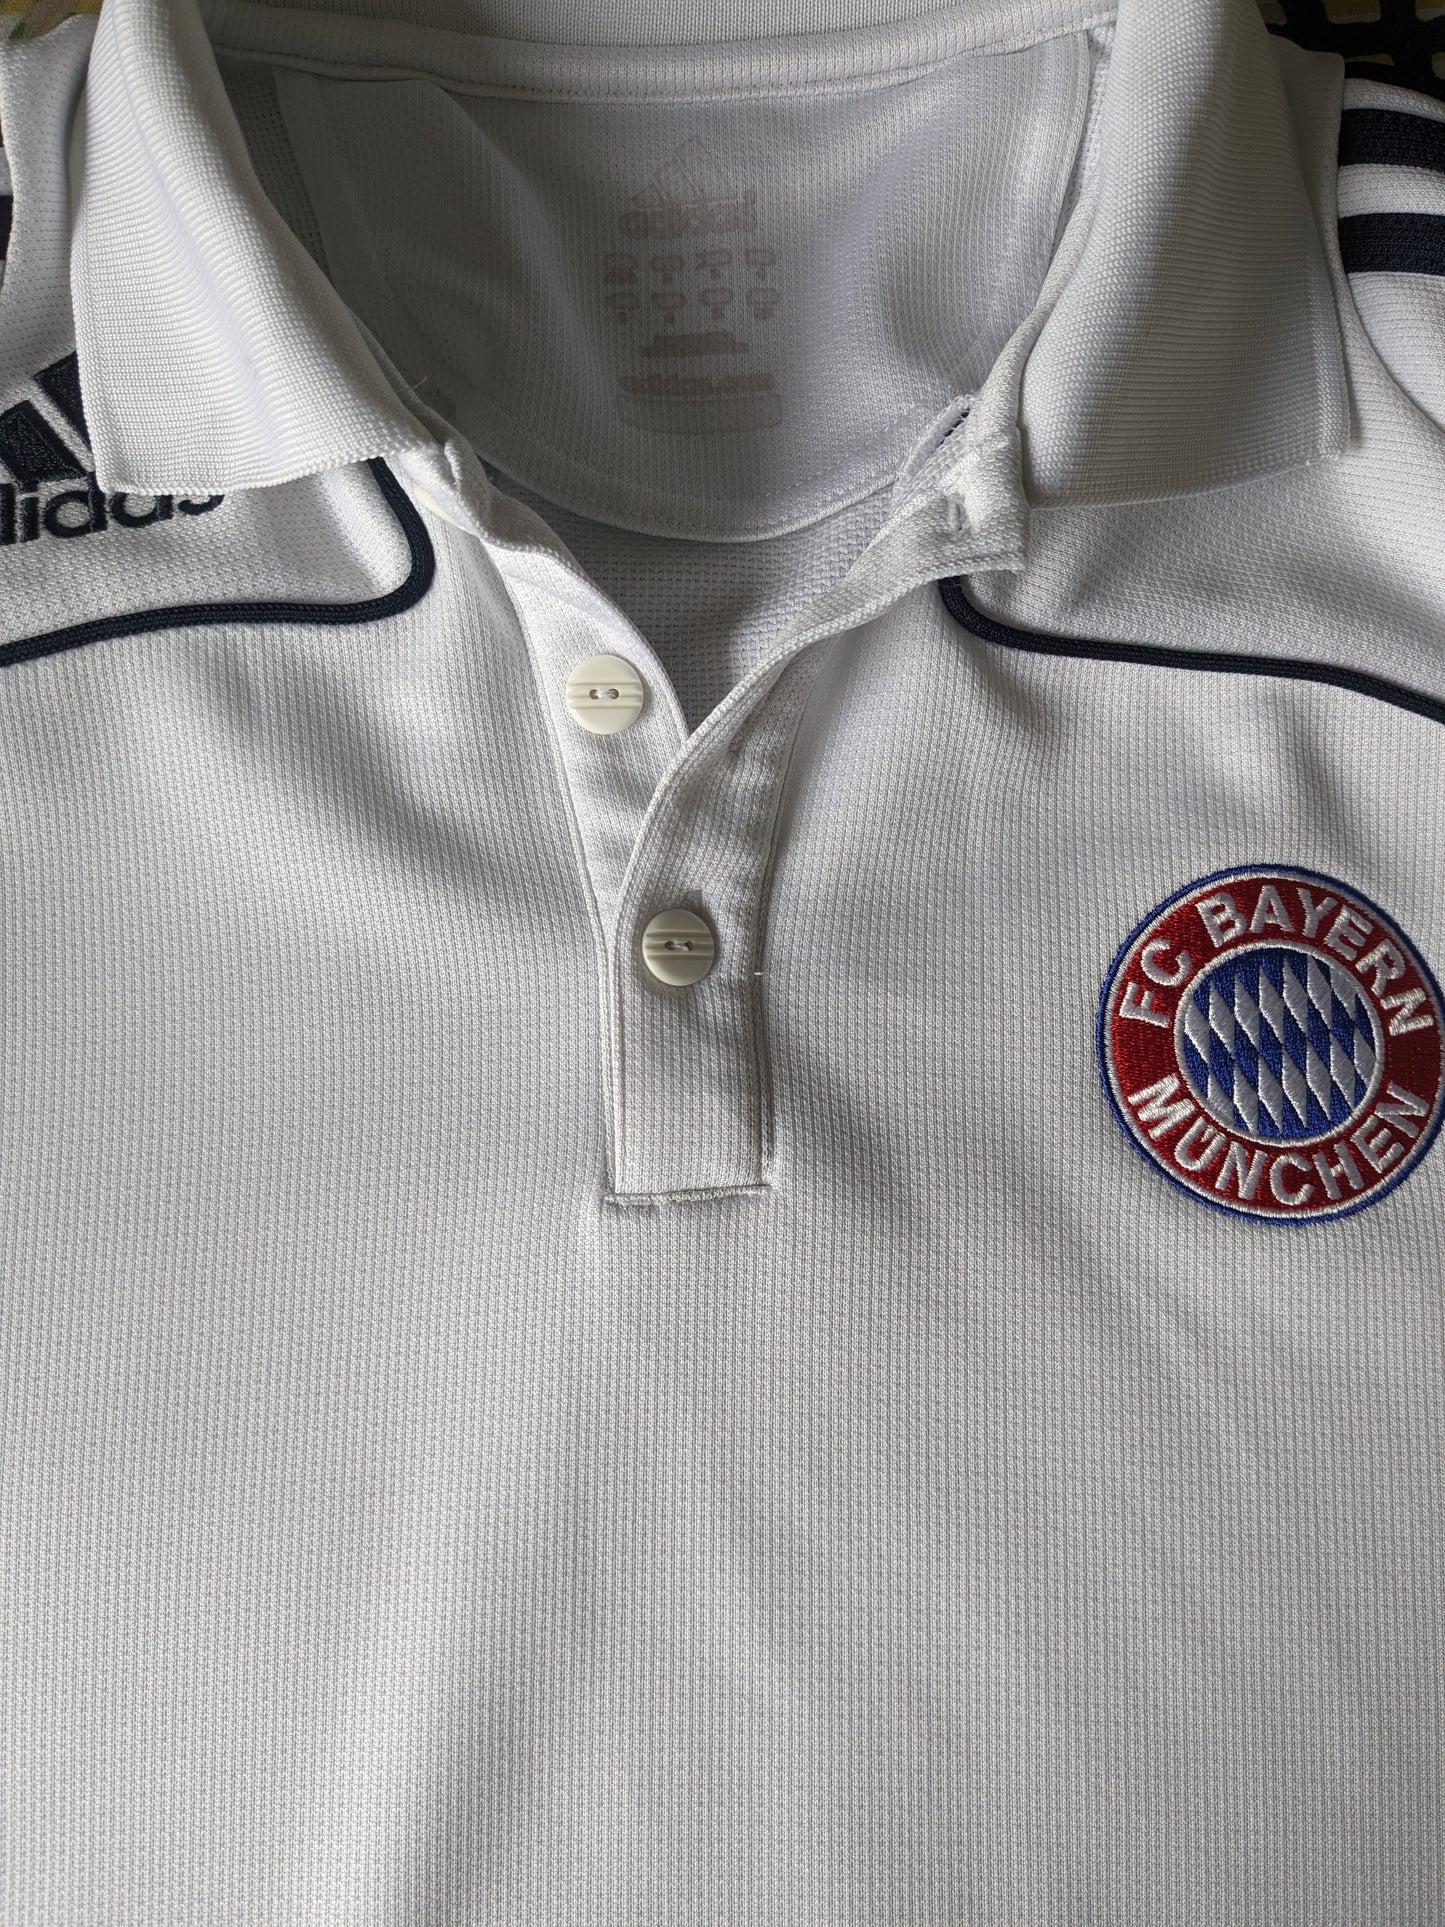 Adidas FC Bayern München Sport Polo. Blau weiß gefärbt. Größe S.